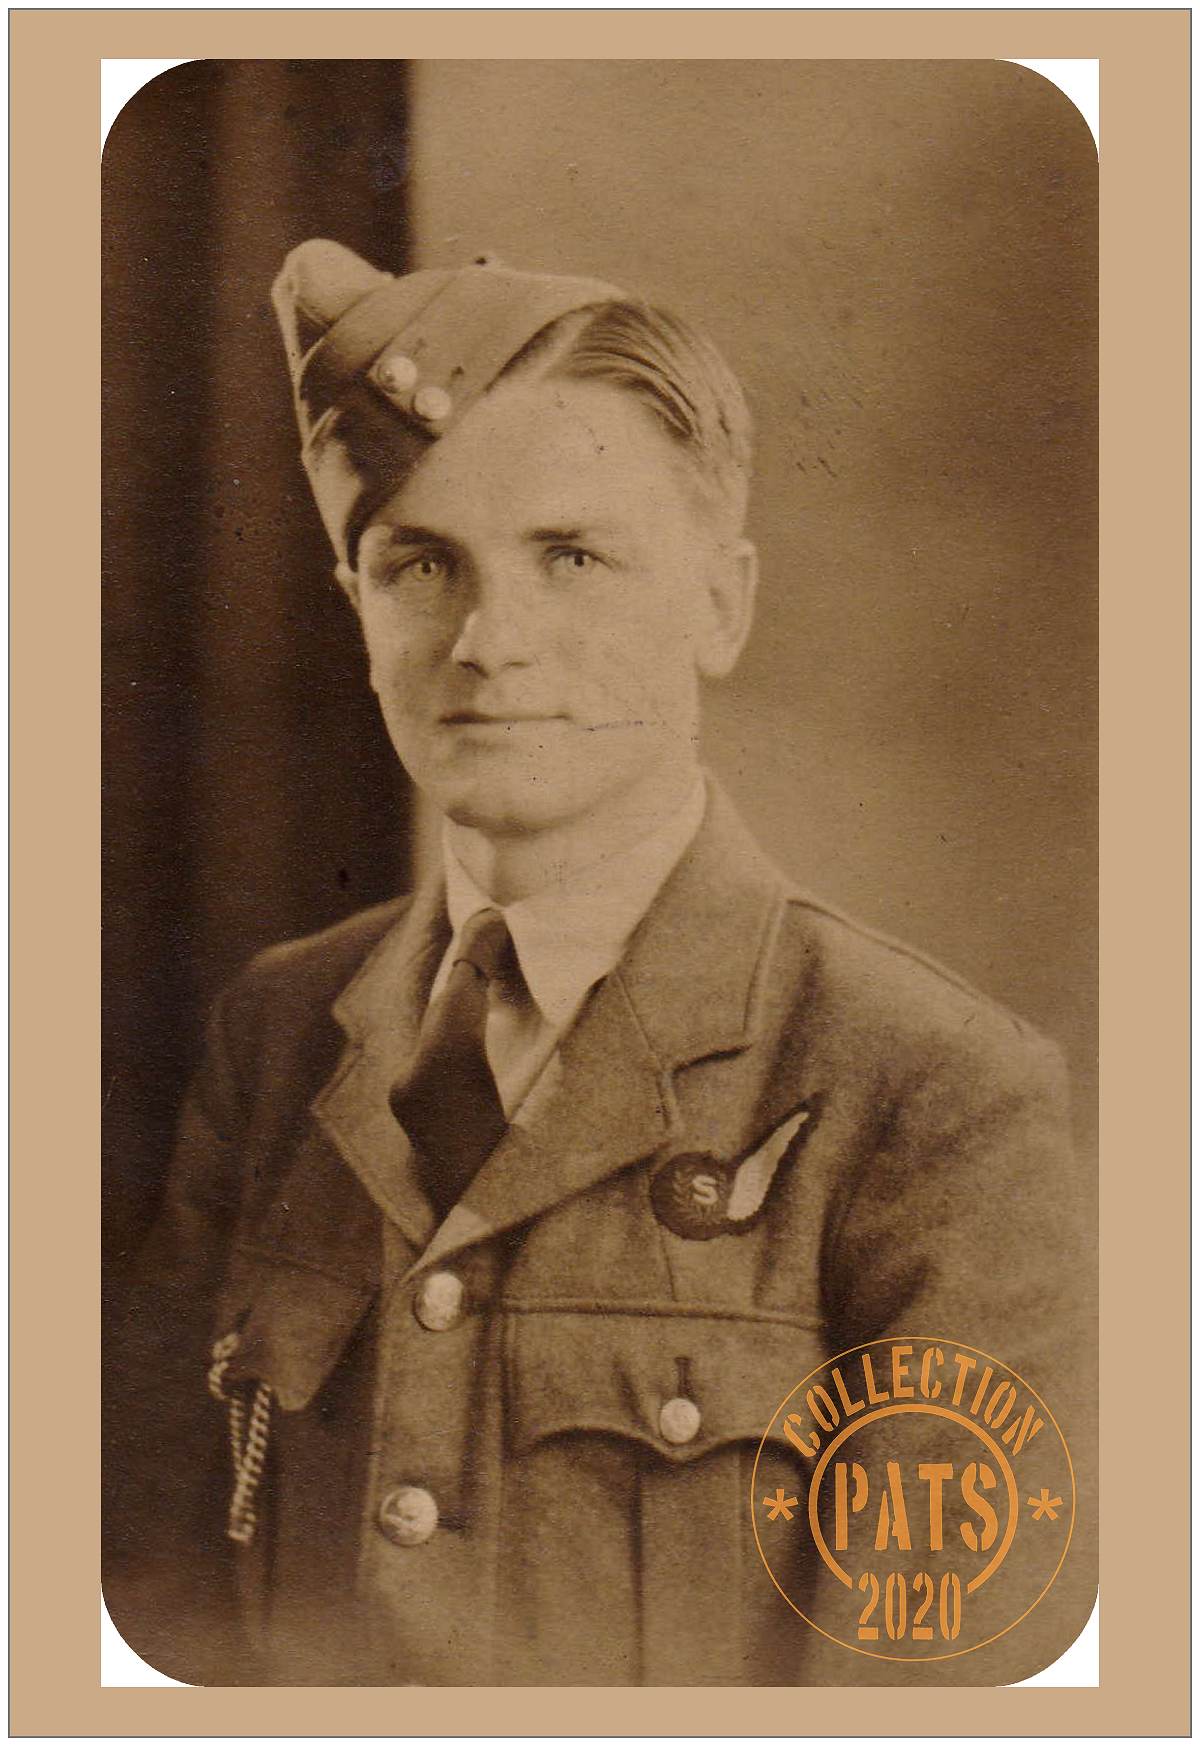 626132  - Sgt. Walter Arthur Kelham - RAF - Age 19